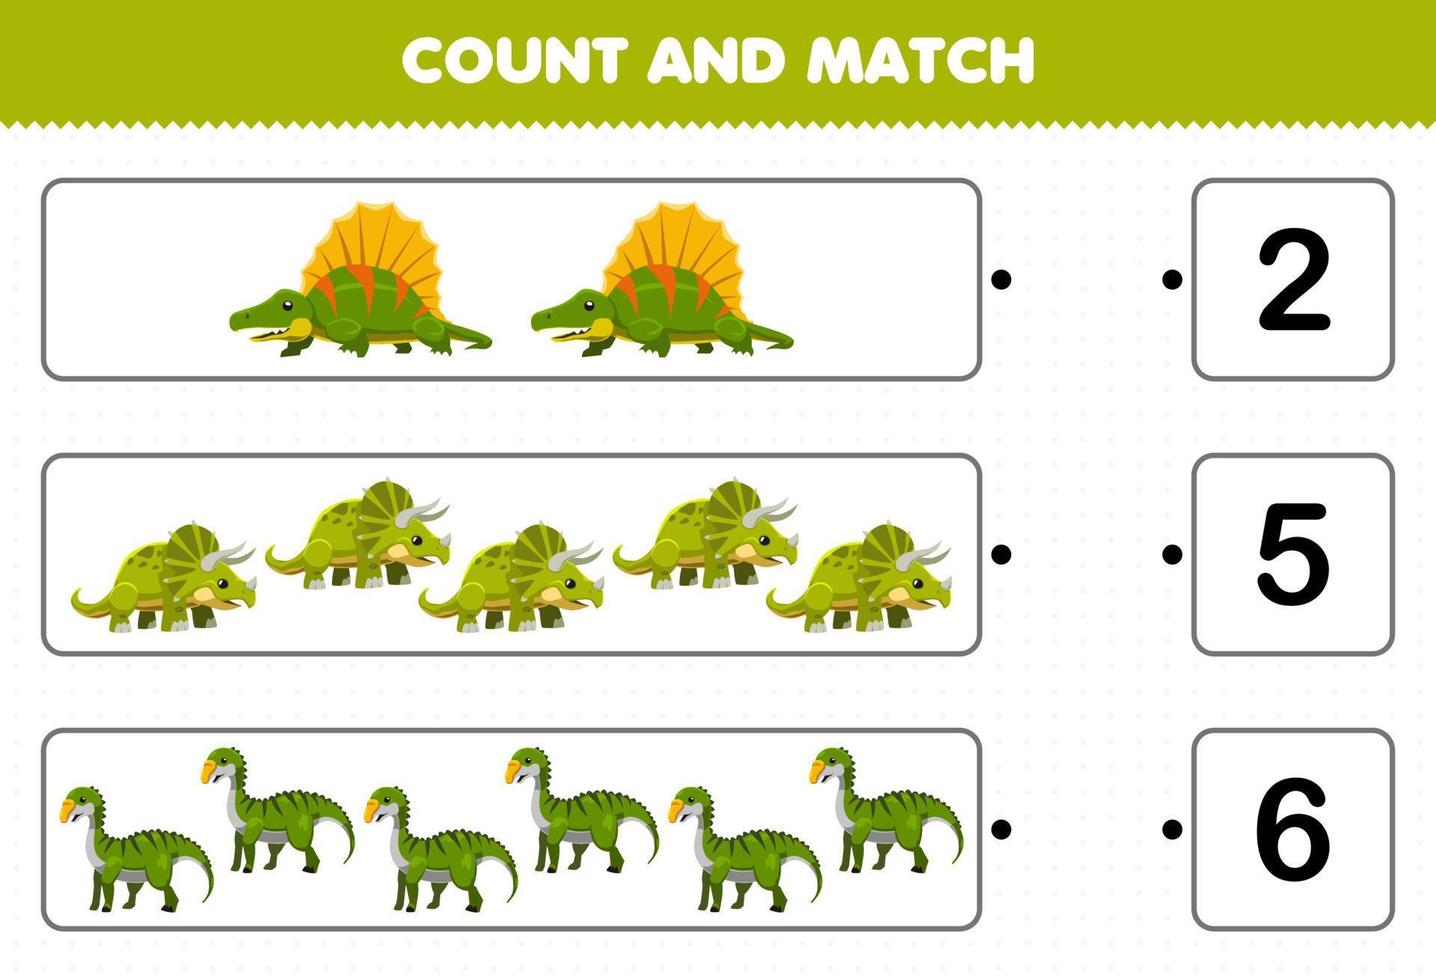 juego educativo para niños contar y combinar contar el número de dinosaurios  verdes prehistóricos de dibujos animados y combinar con los números  correctos hoja de trabajo imprimible 9639012 Vector en Vecteezy